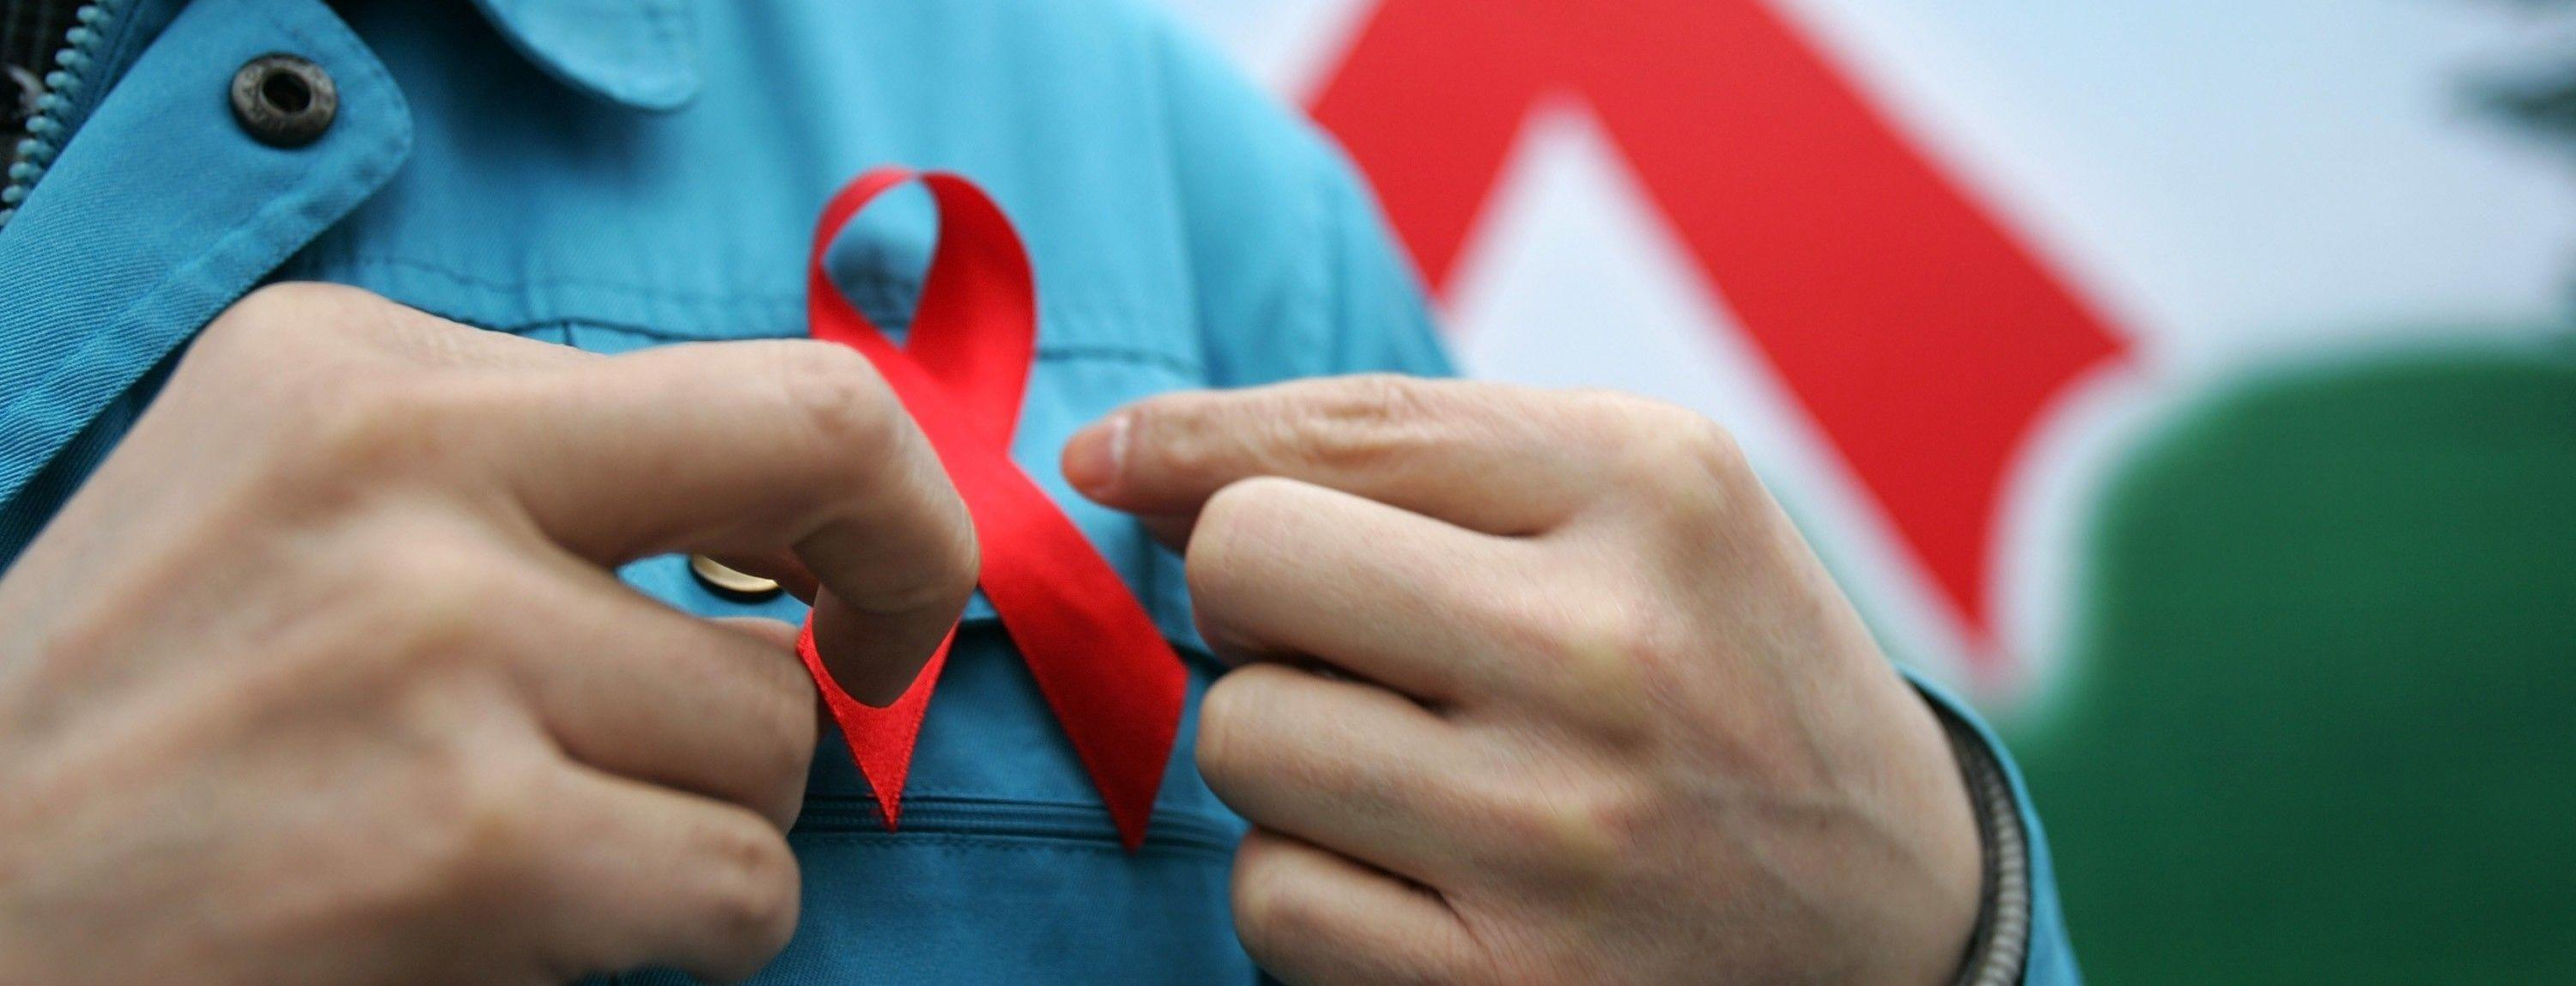 Кожен третій не знає про свій діагноз: скільки українців живуть з ВІЛ - Новини Здоров’я